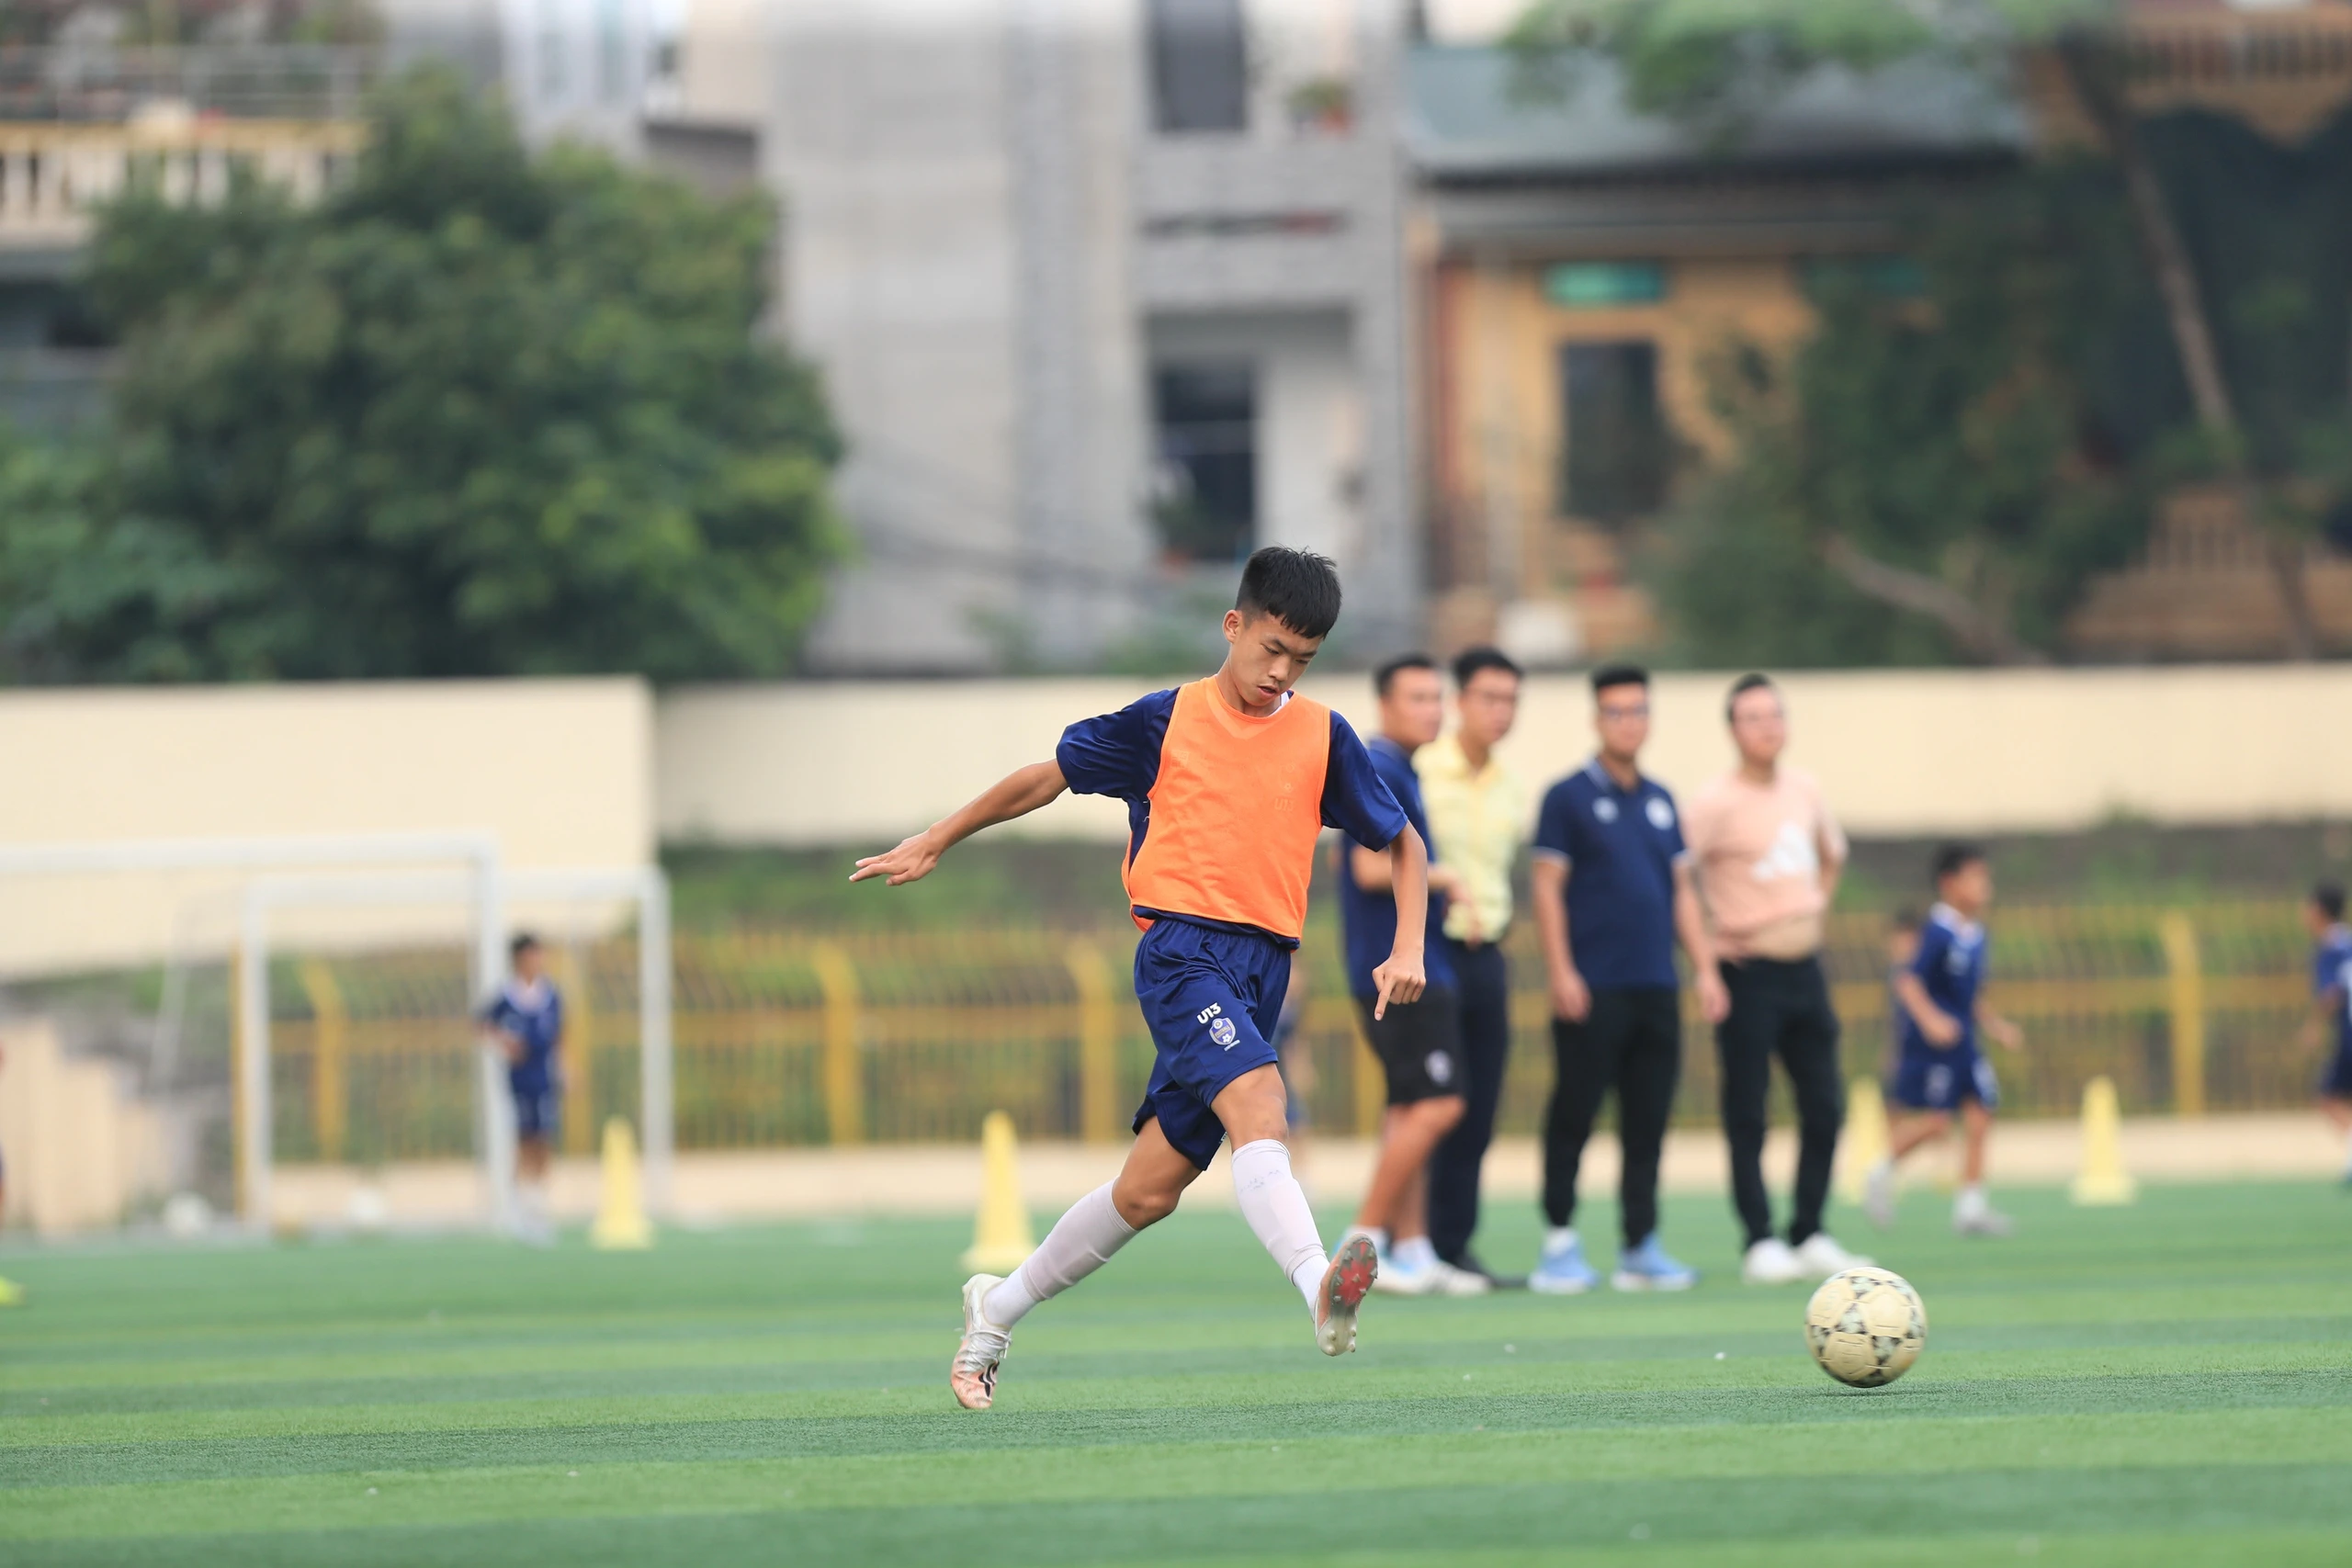 Bên trong trung tâm bóng đá 'độc lạ', nơi con trai Thành Lương nuôi giấc mơ thành cầu thủ